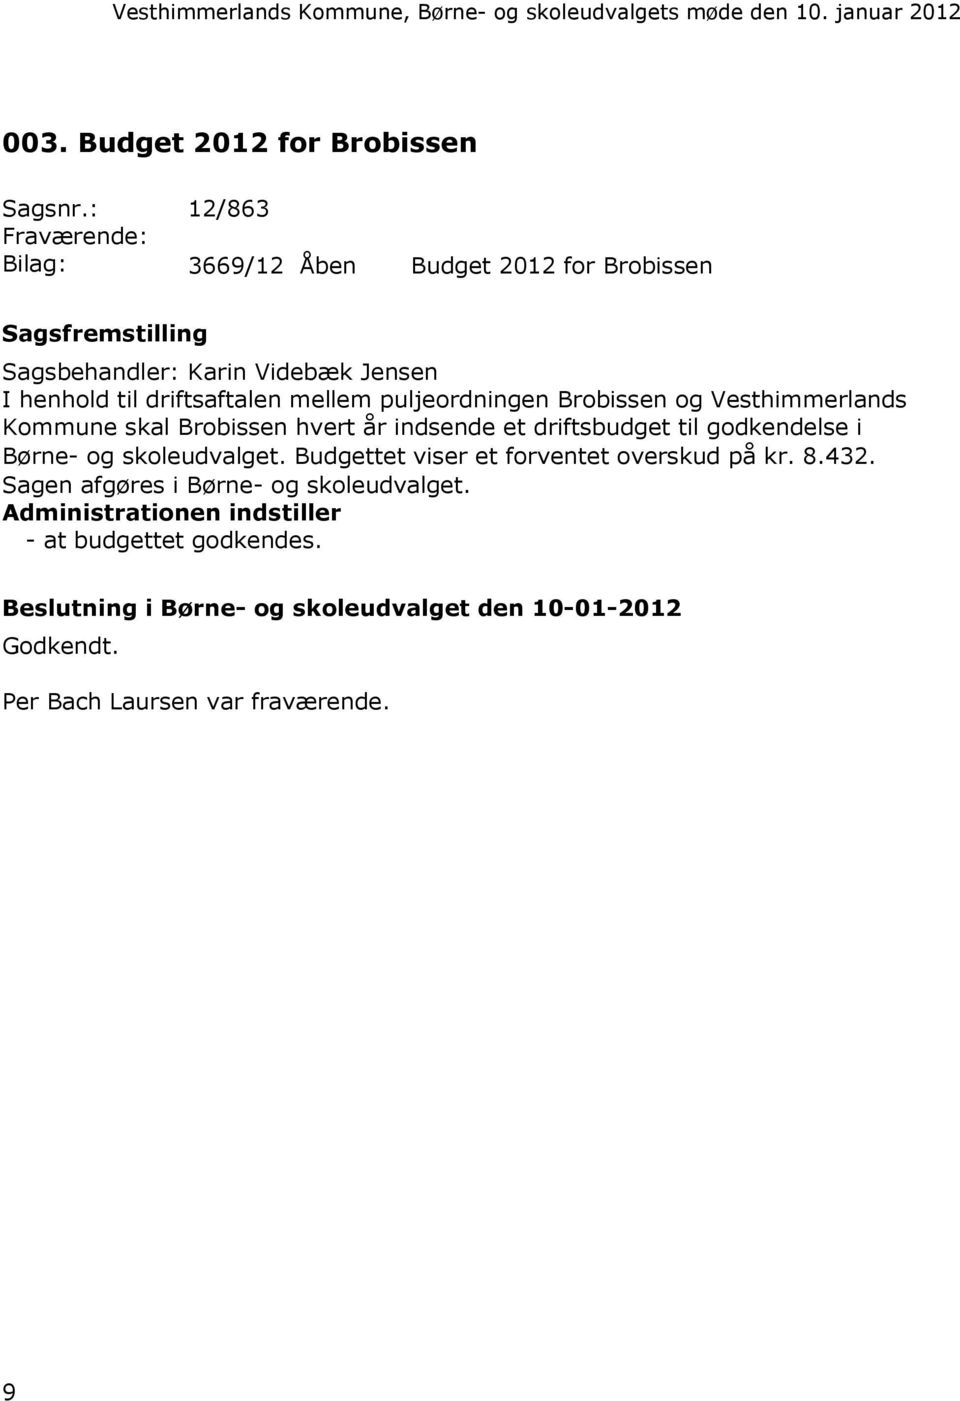 driftsaftalen mellem puljeordningen Brobissen og Vesthimmerlands Kommune skal Brobissen hvert år indsende et driftsbudget til godkendelse i